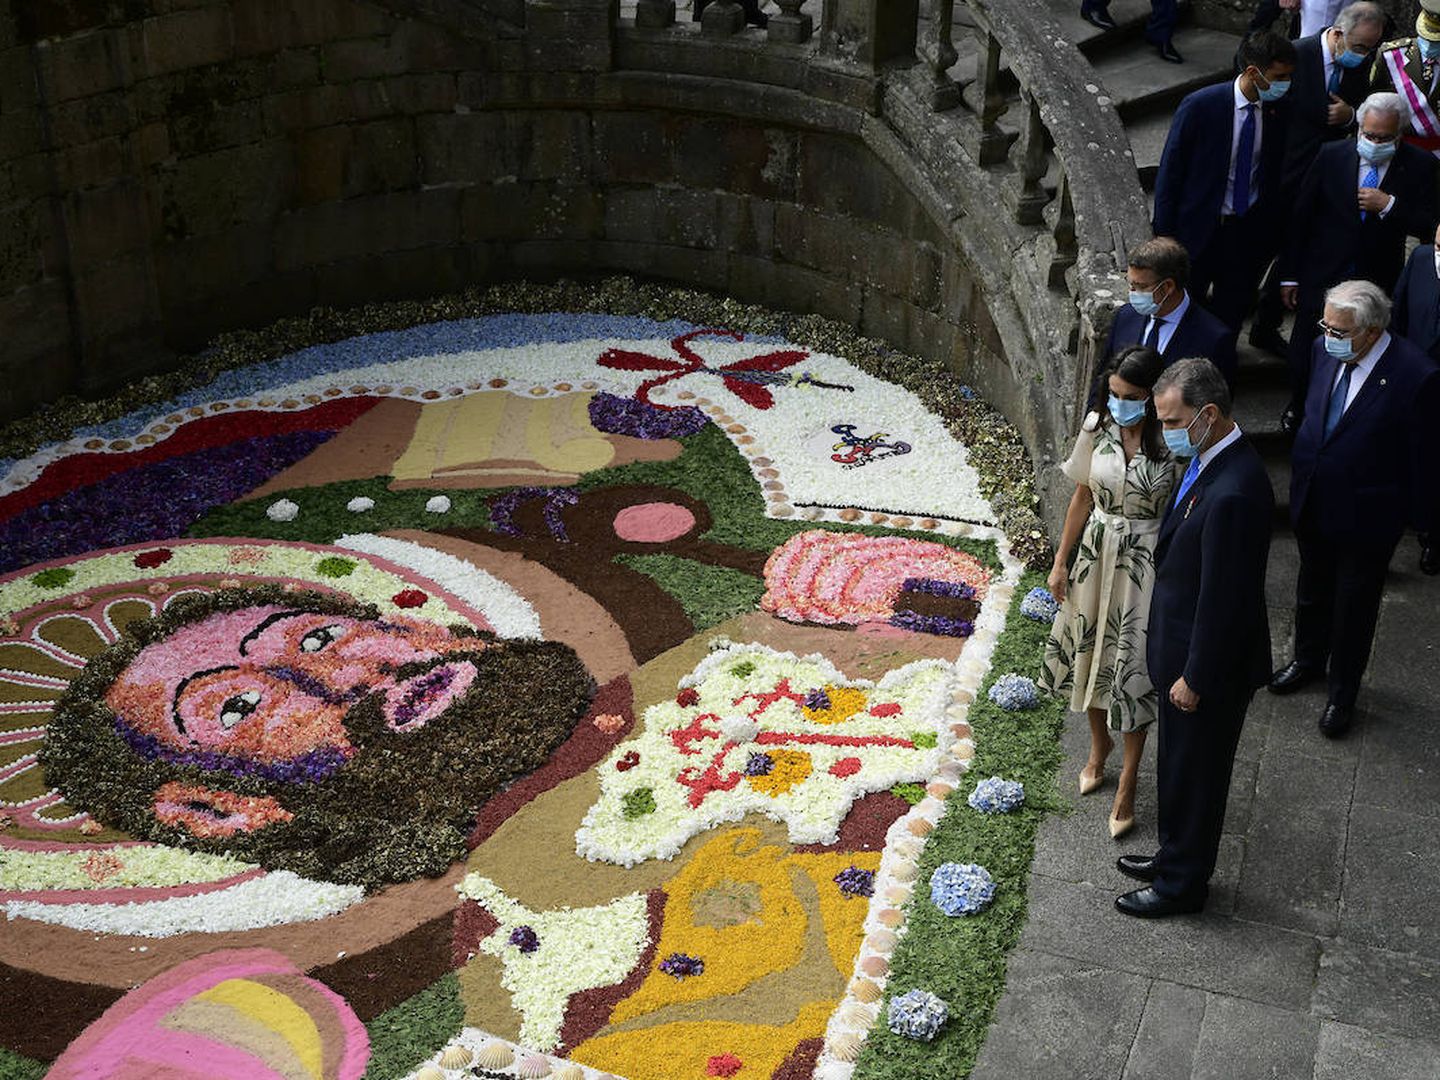 Los reyes admirando una de las alfombras florales en honor al Apóstol. (Limited Pictures)